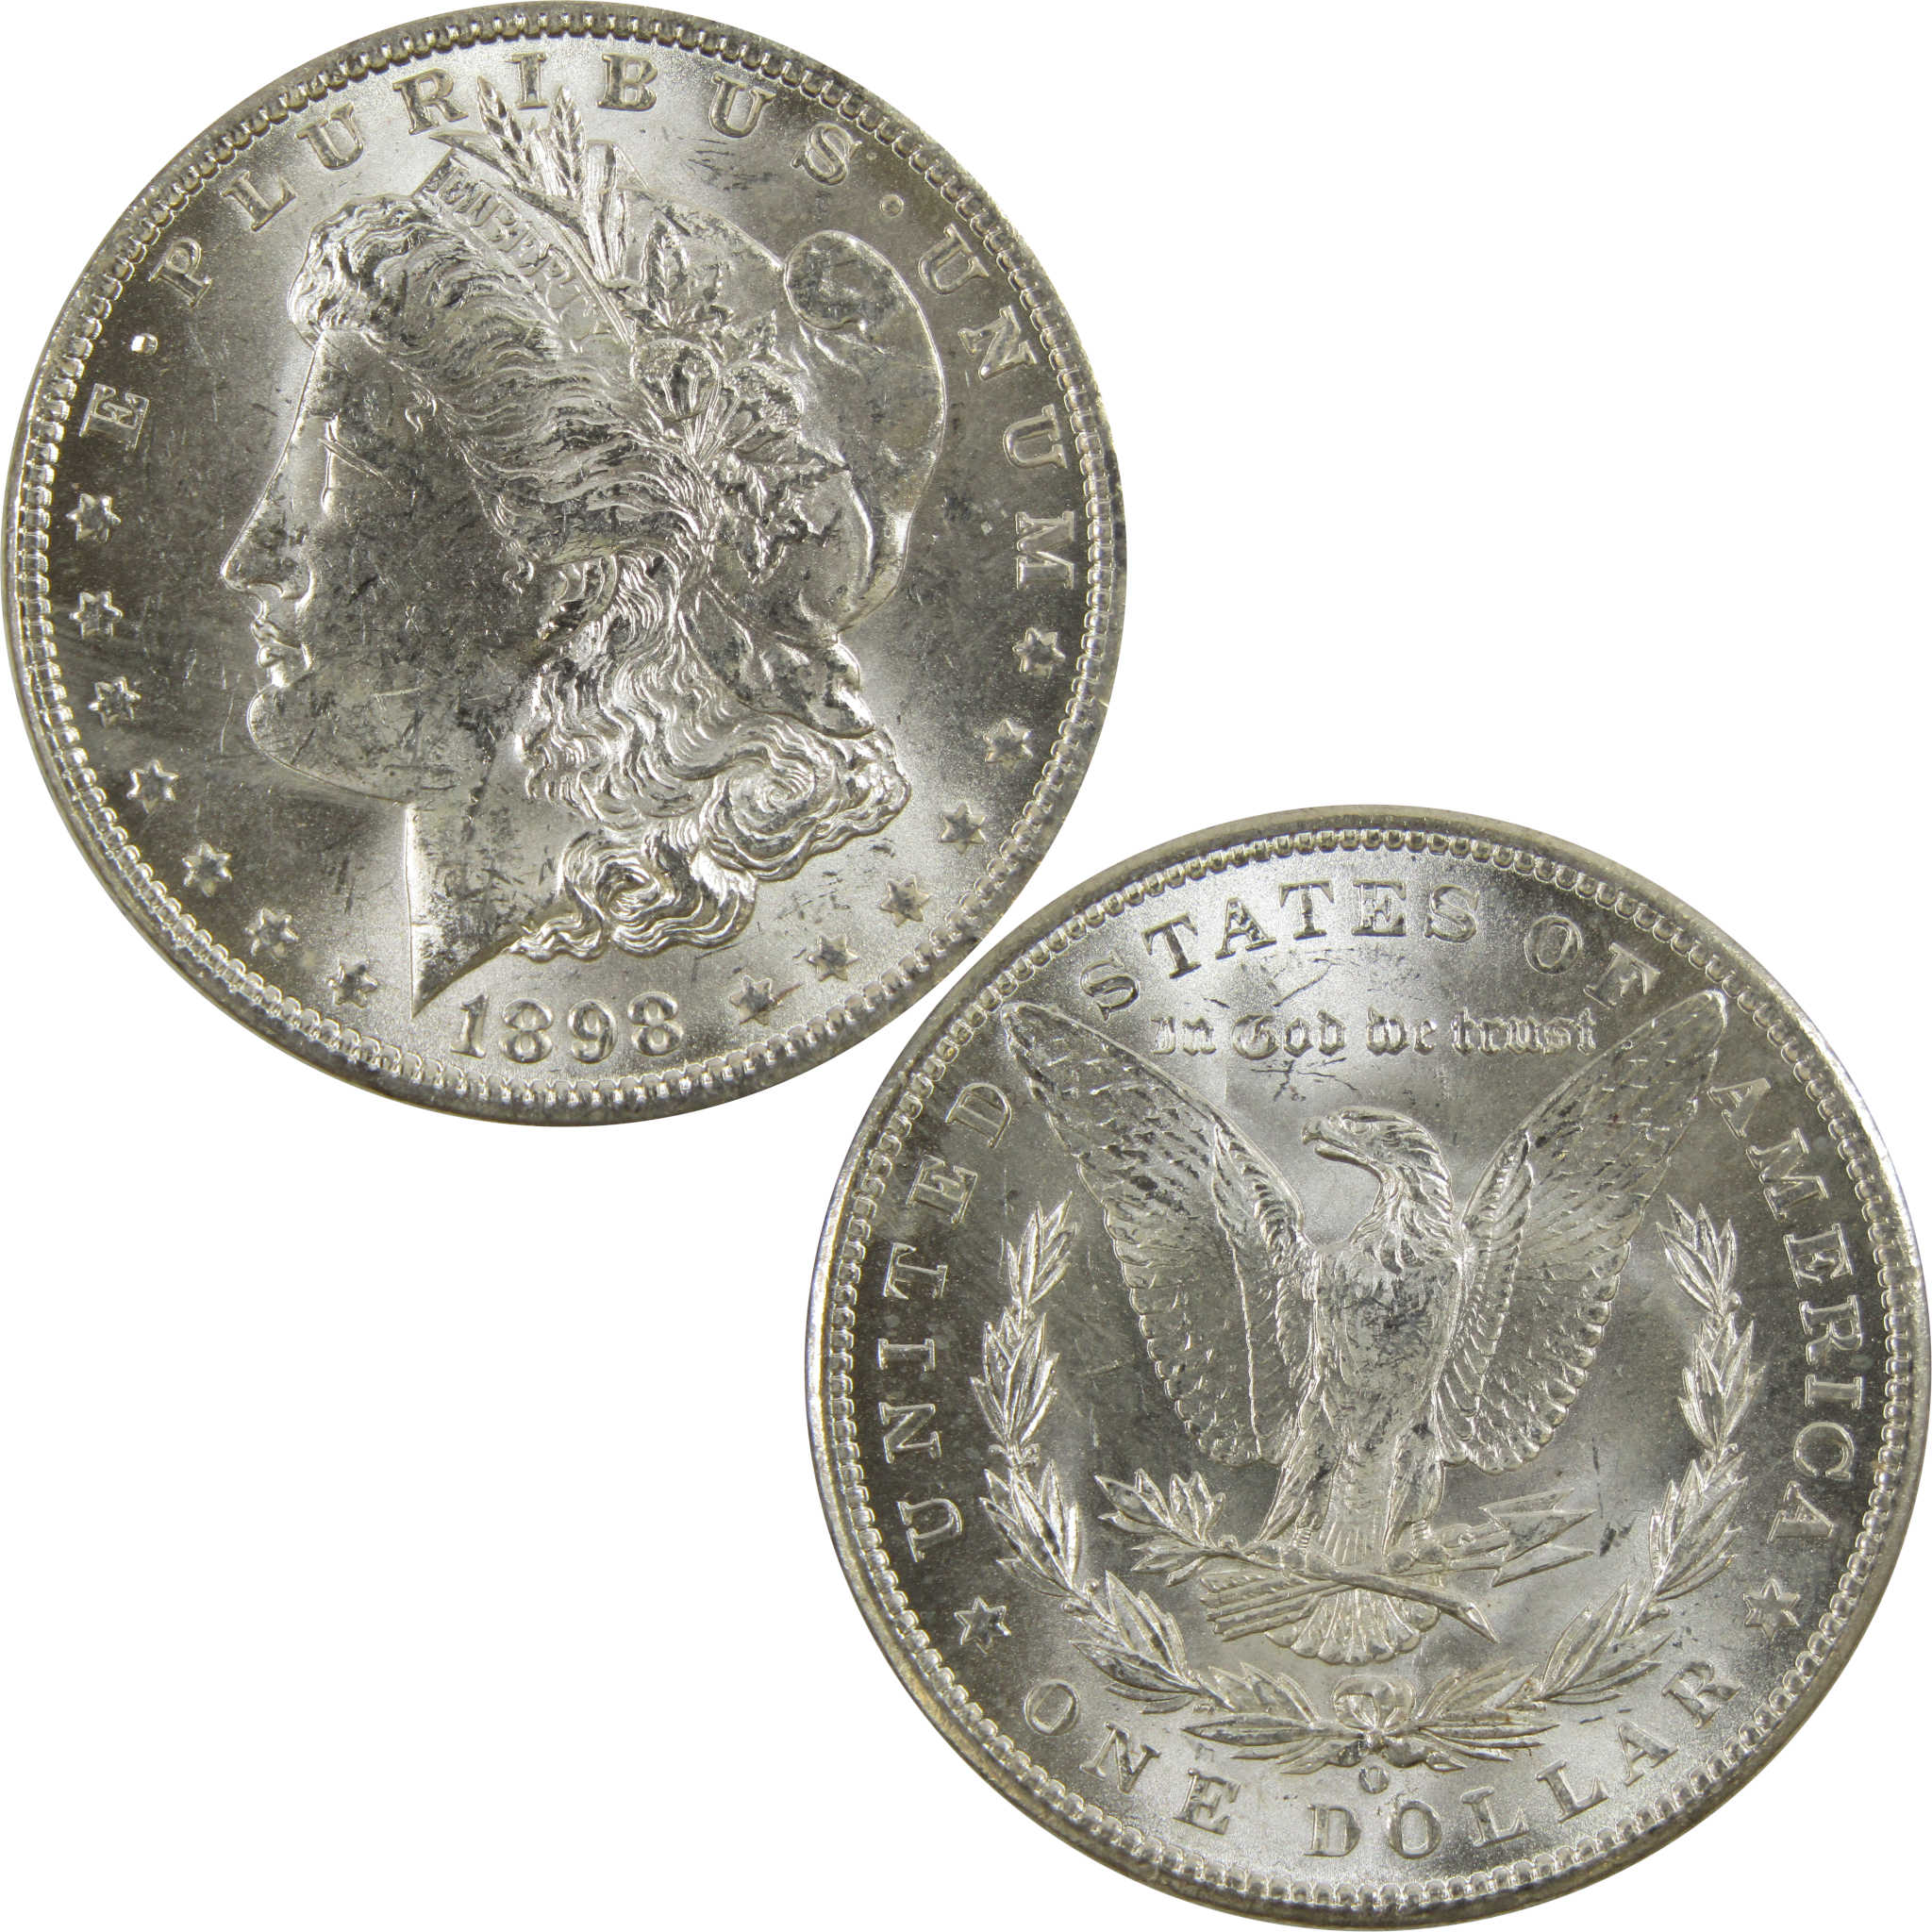 1898 O Morgan Dollar BU Uncirculated 90% Silver $1 Coin SKU:I5228 - Morgan coin - Morgan silver dollar - Morgan silver dollar for sale - Profile Coins &amp; Collectibles